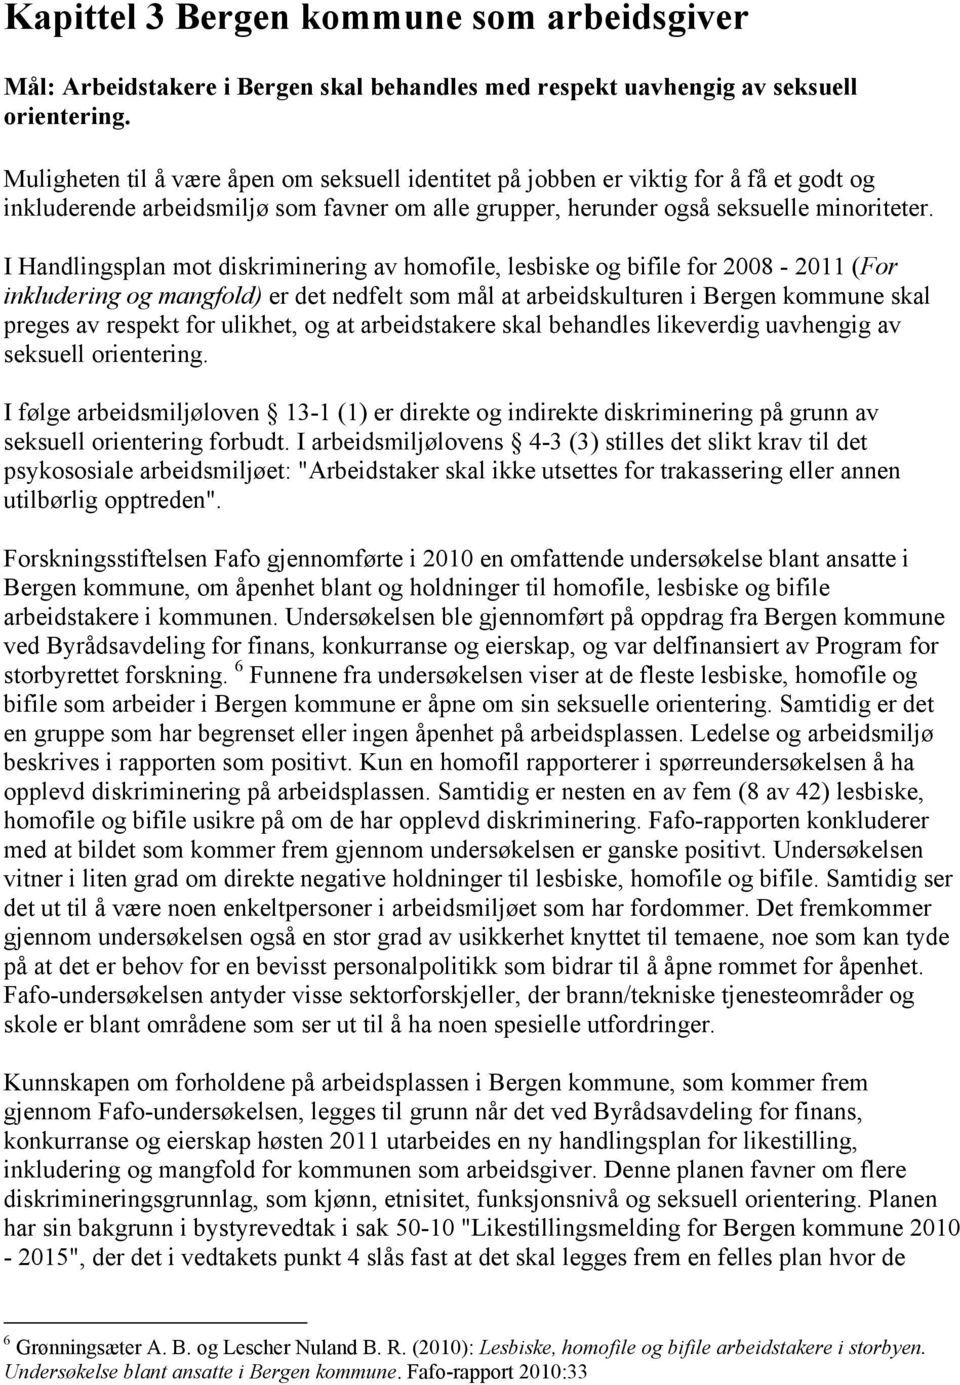 I Handlingsplan mot diskriminering av homofile, lesbiske og bifile for 2008-2011 (For inkludering og mangfold) er det nedfelt som mål at arbeidskulturen i Bergen kommune skal preges av respekt for